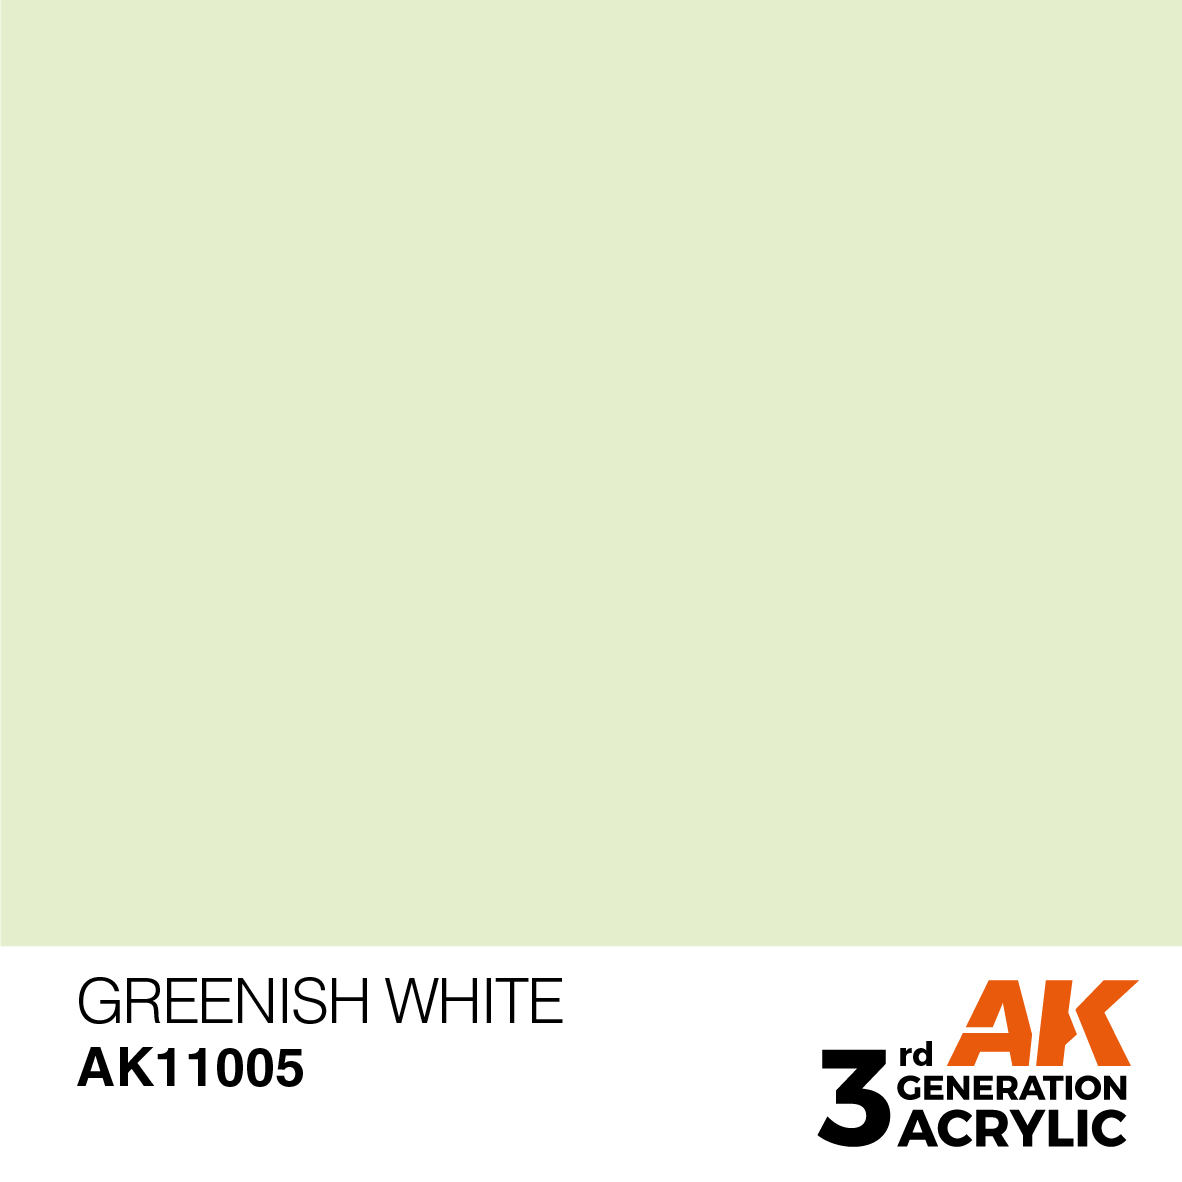 Greenish White - Standard 